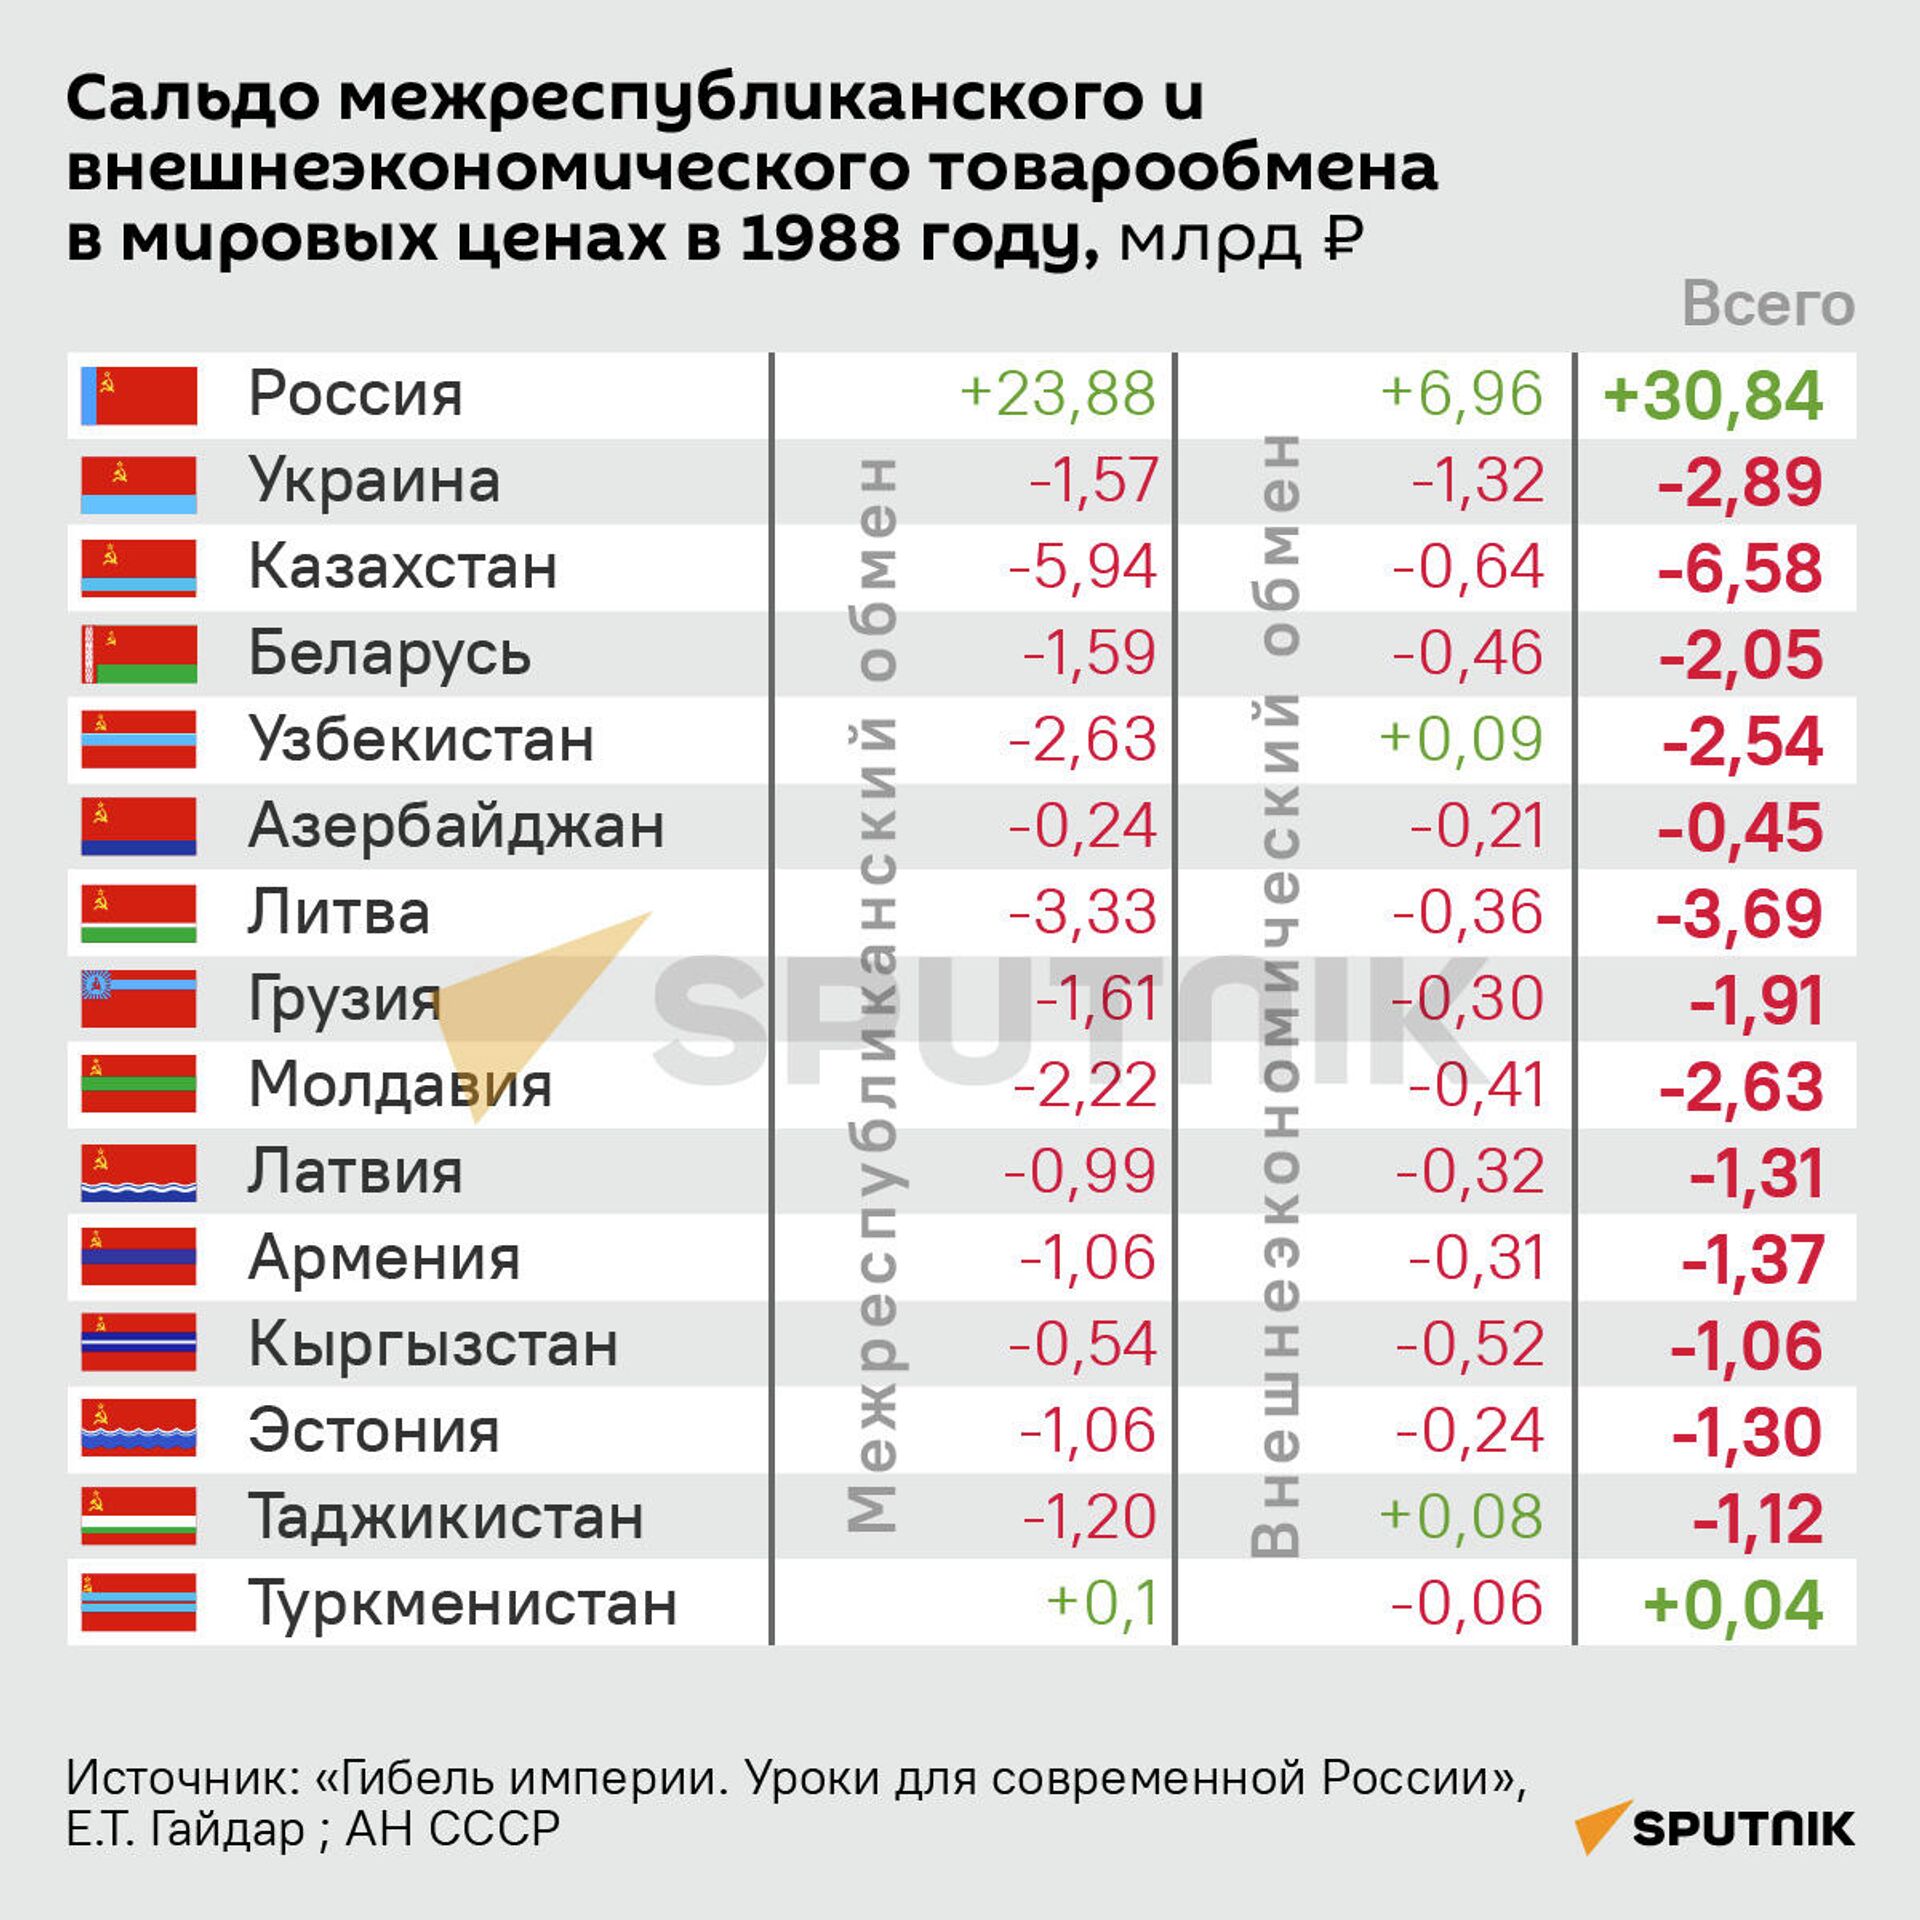 Сальдо межреспубликанского и внешнеэкономического товарообмена в мировых ценах в 1988 году - Sputnik Беларусь, 1920, 27.12.2021